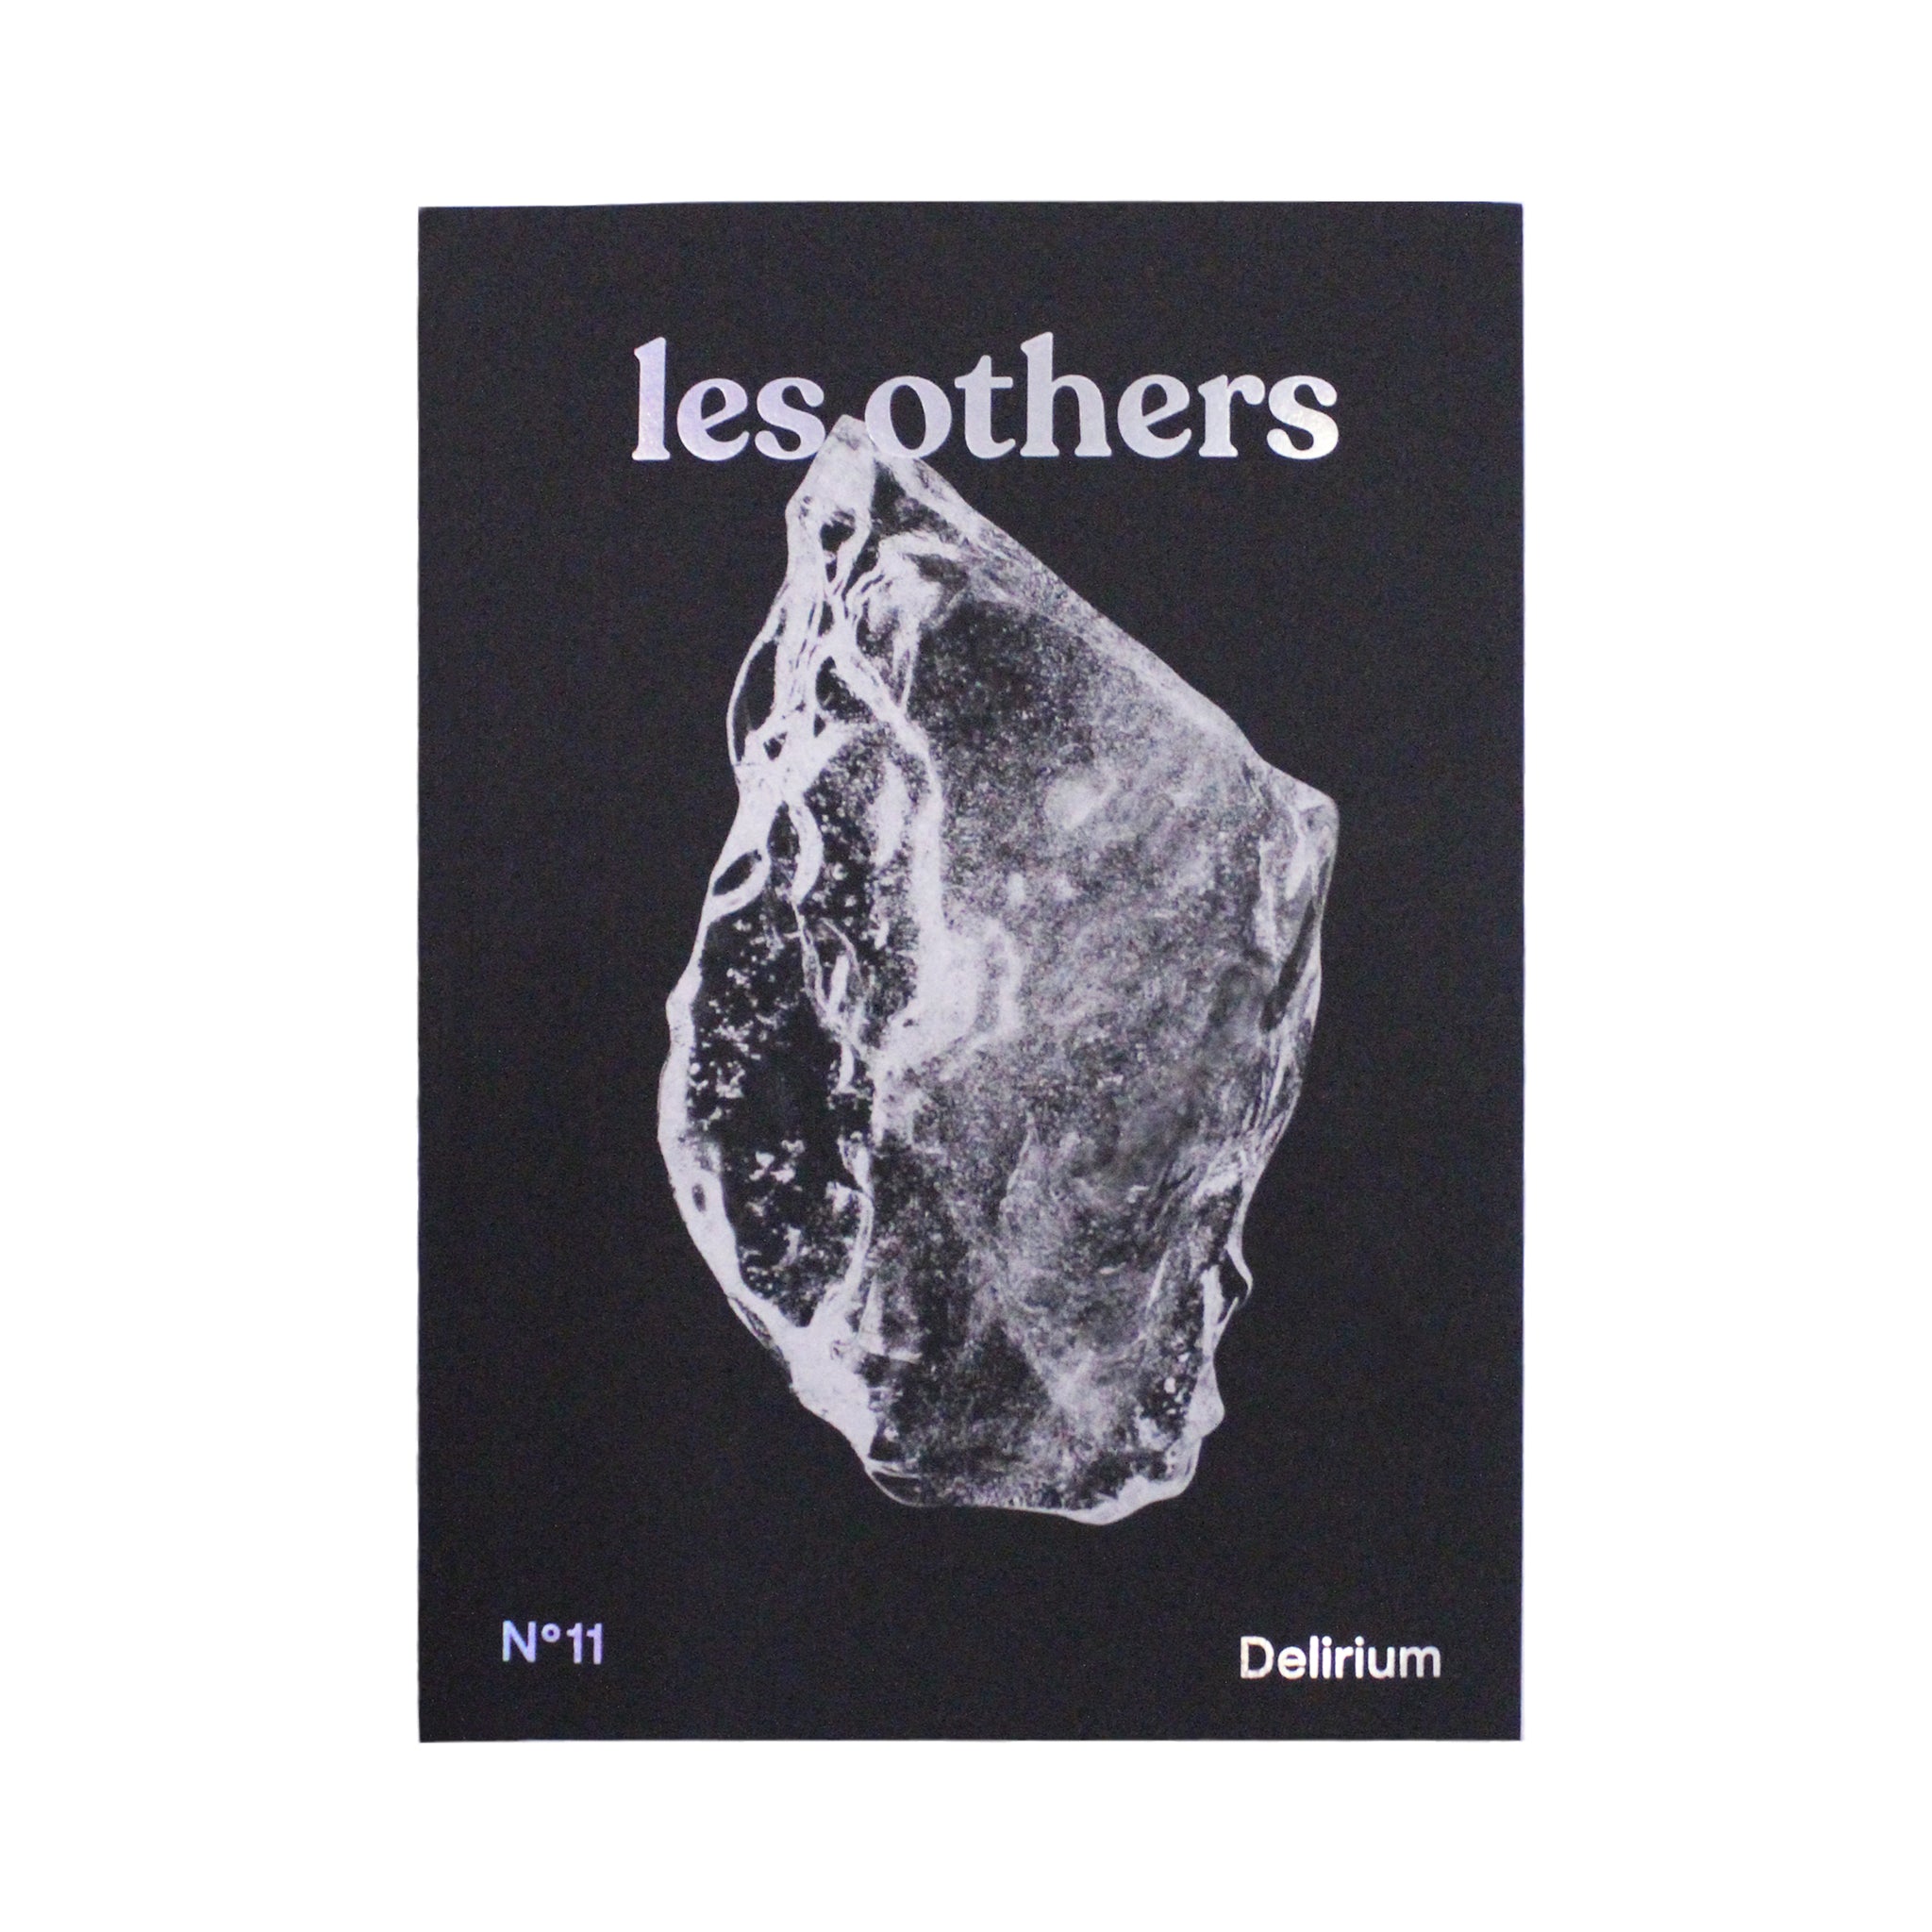 Les Others n°11 - Delirium